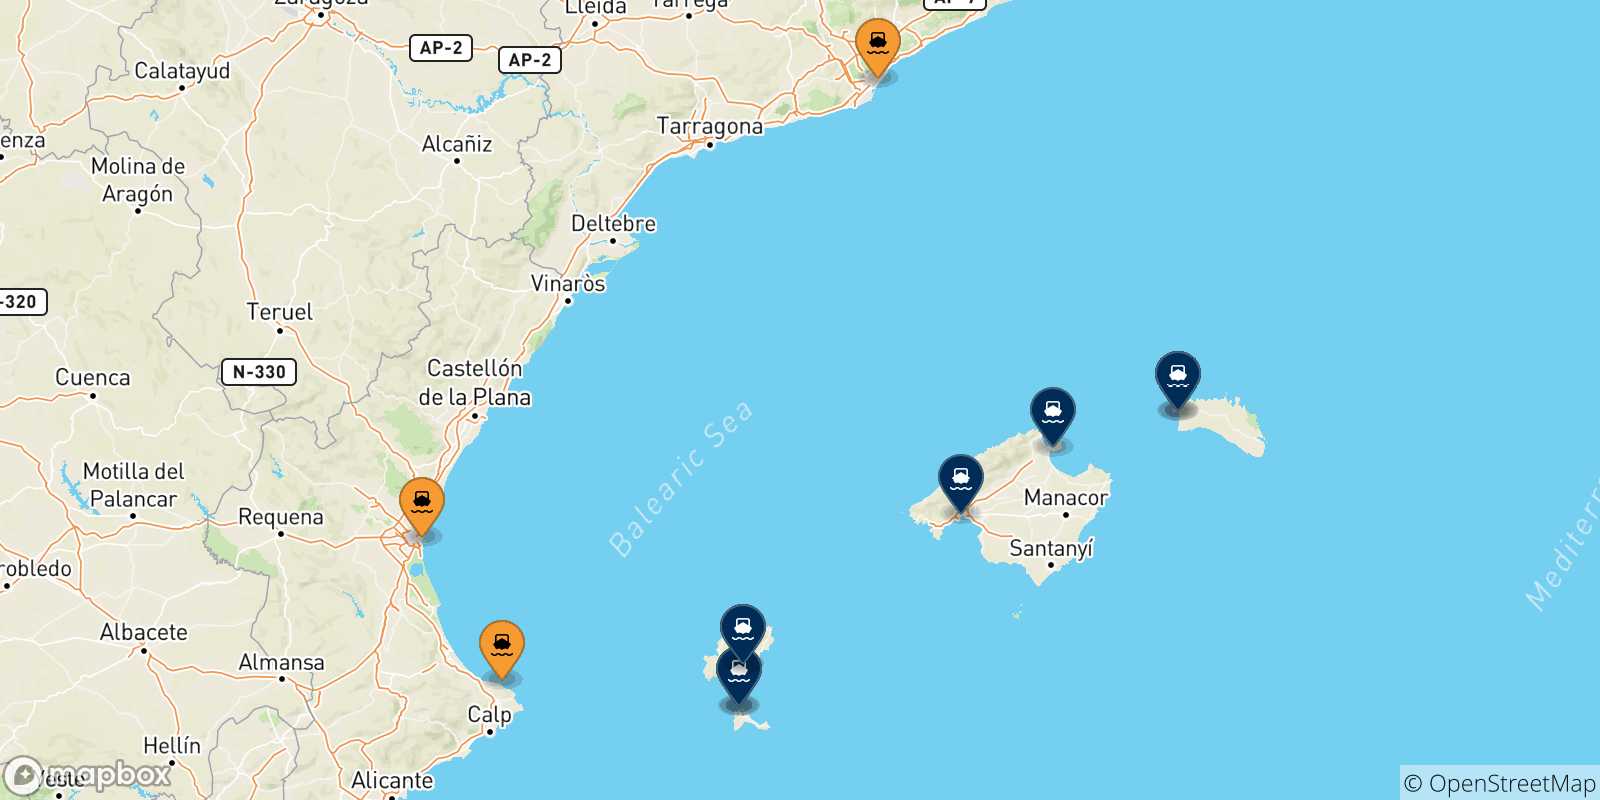 Mappa delle possibili rotte tra la Spagna e le Isole Baleari